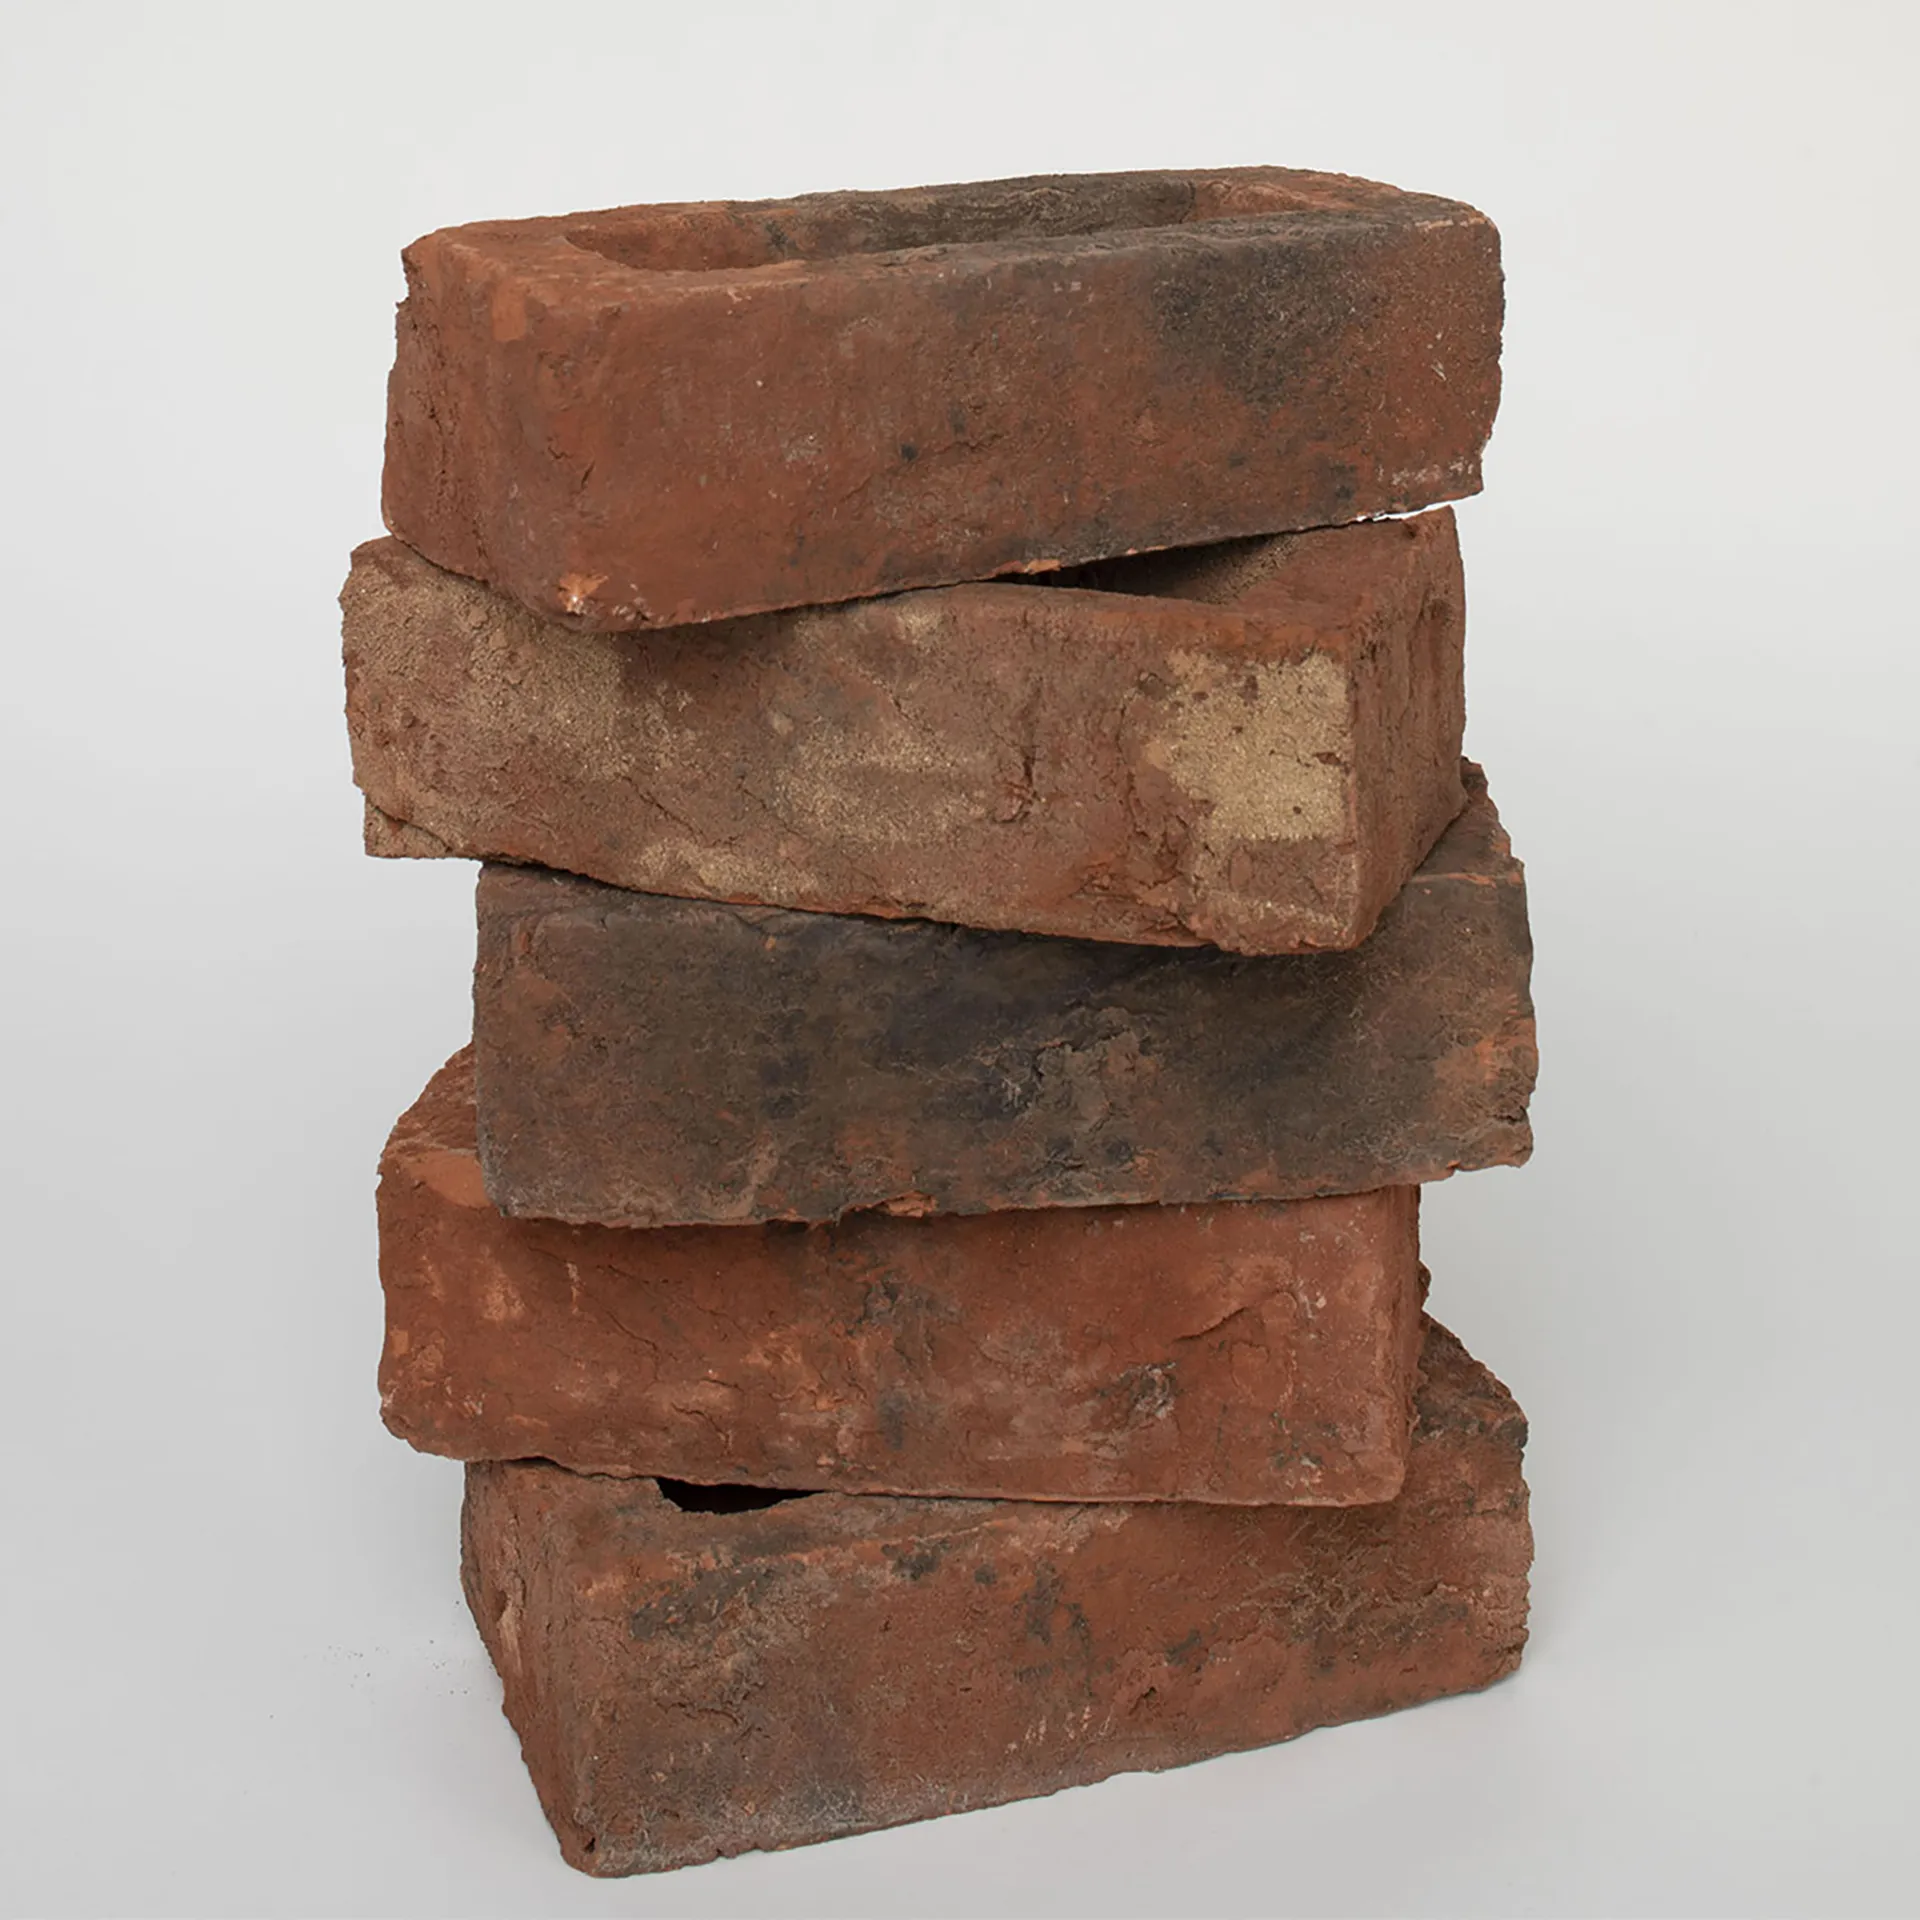 smoked red brick stack